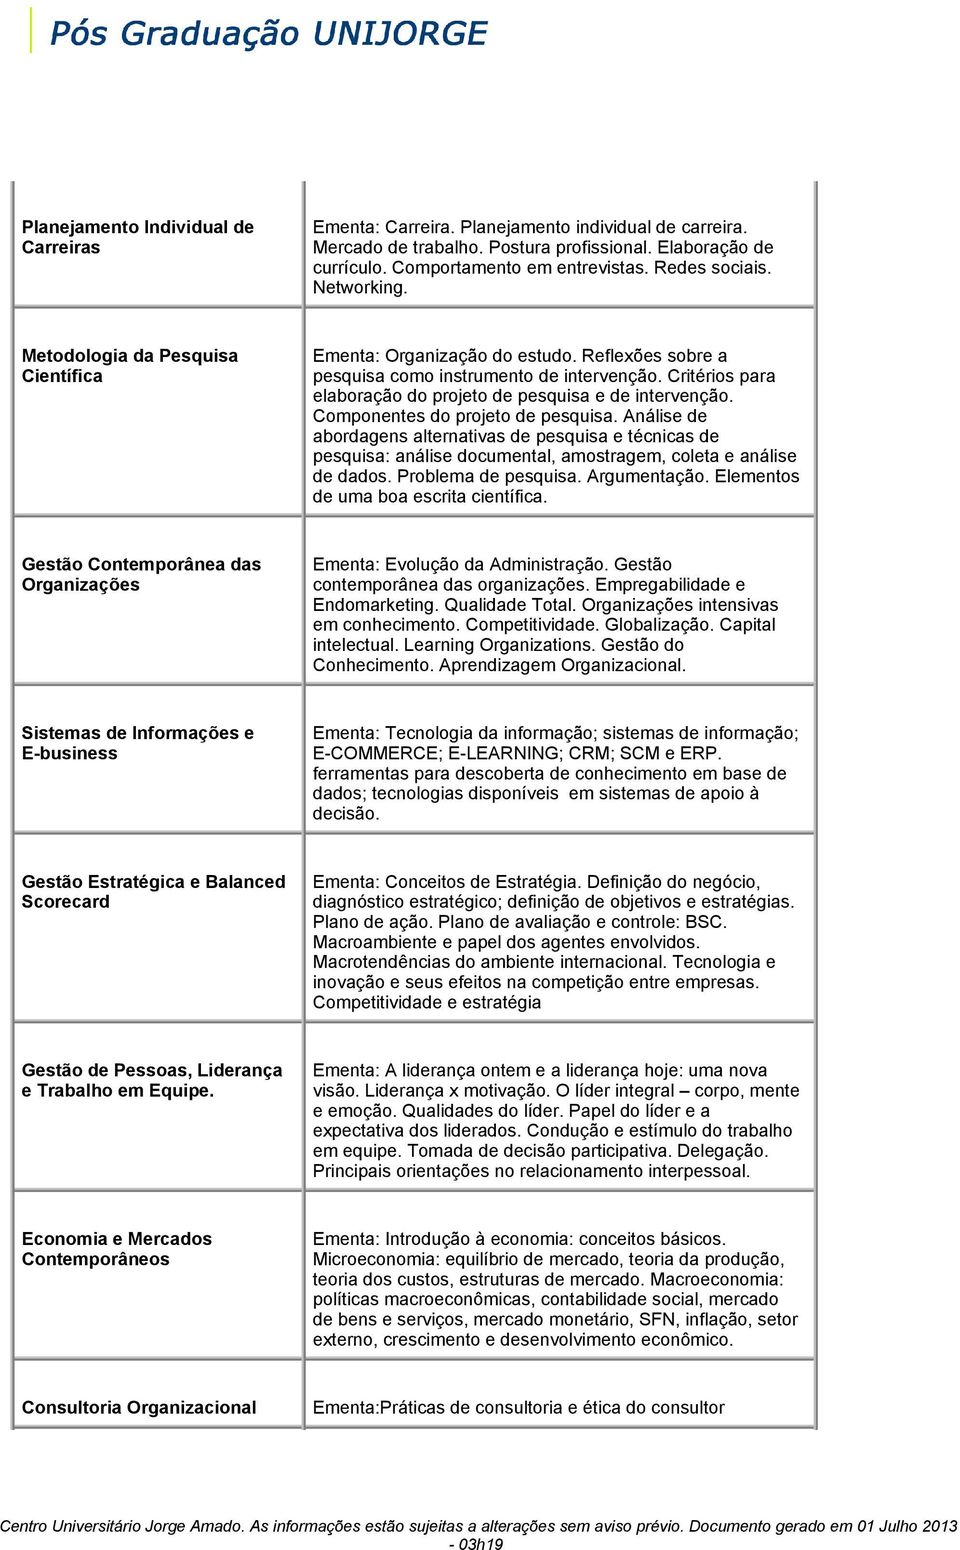 Critérios para elaboração do projeto de pesquisa e de intervenção. Componentes do projeto de pesquisa.